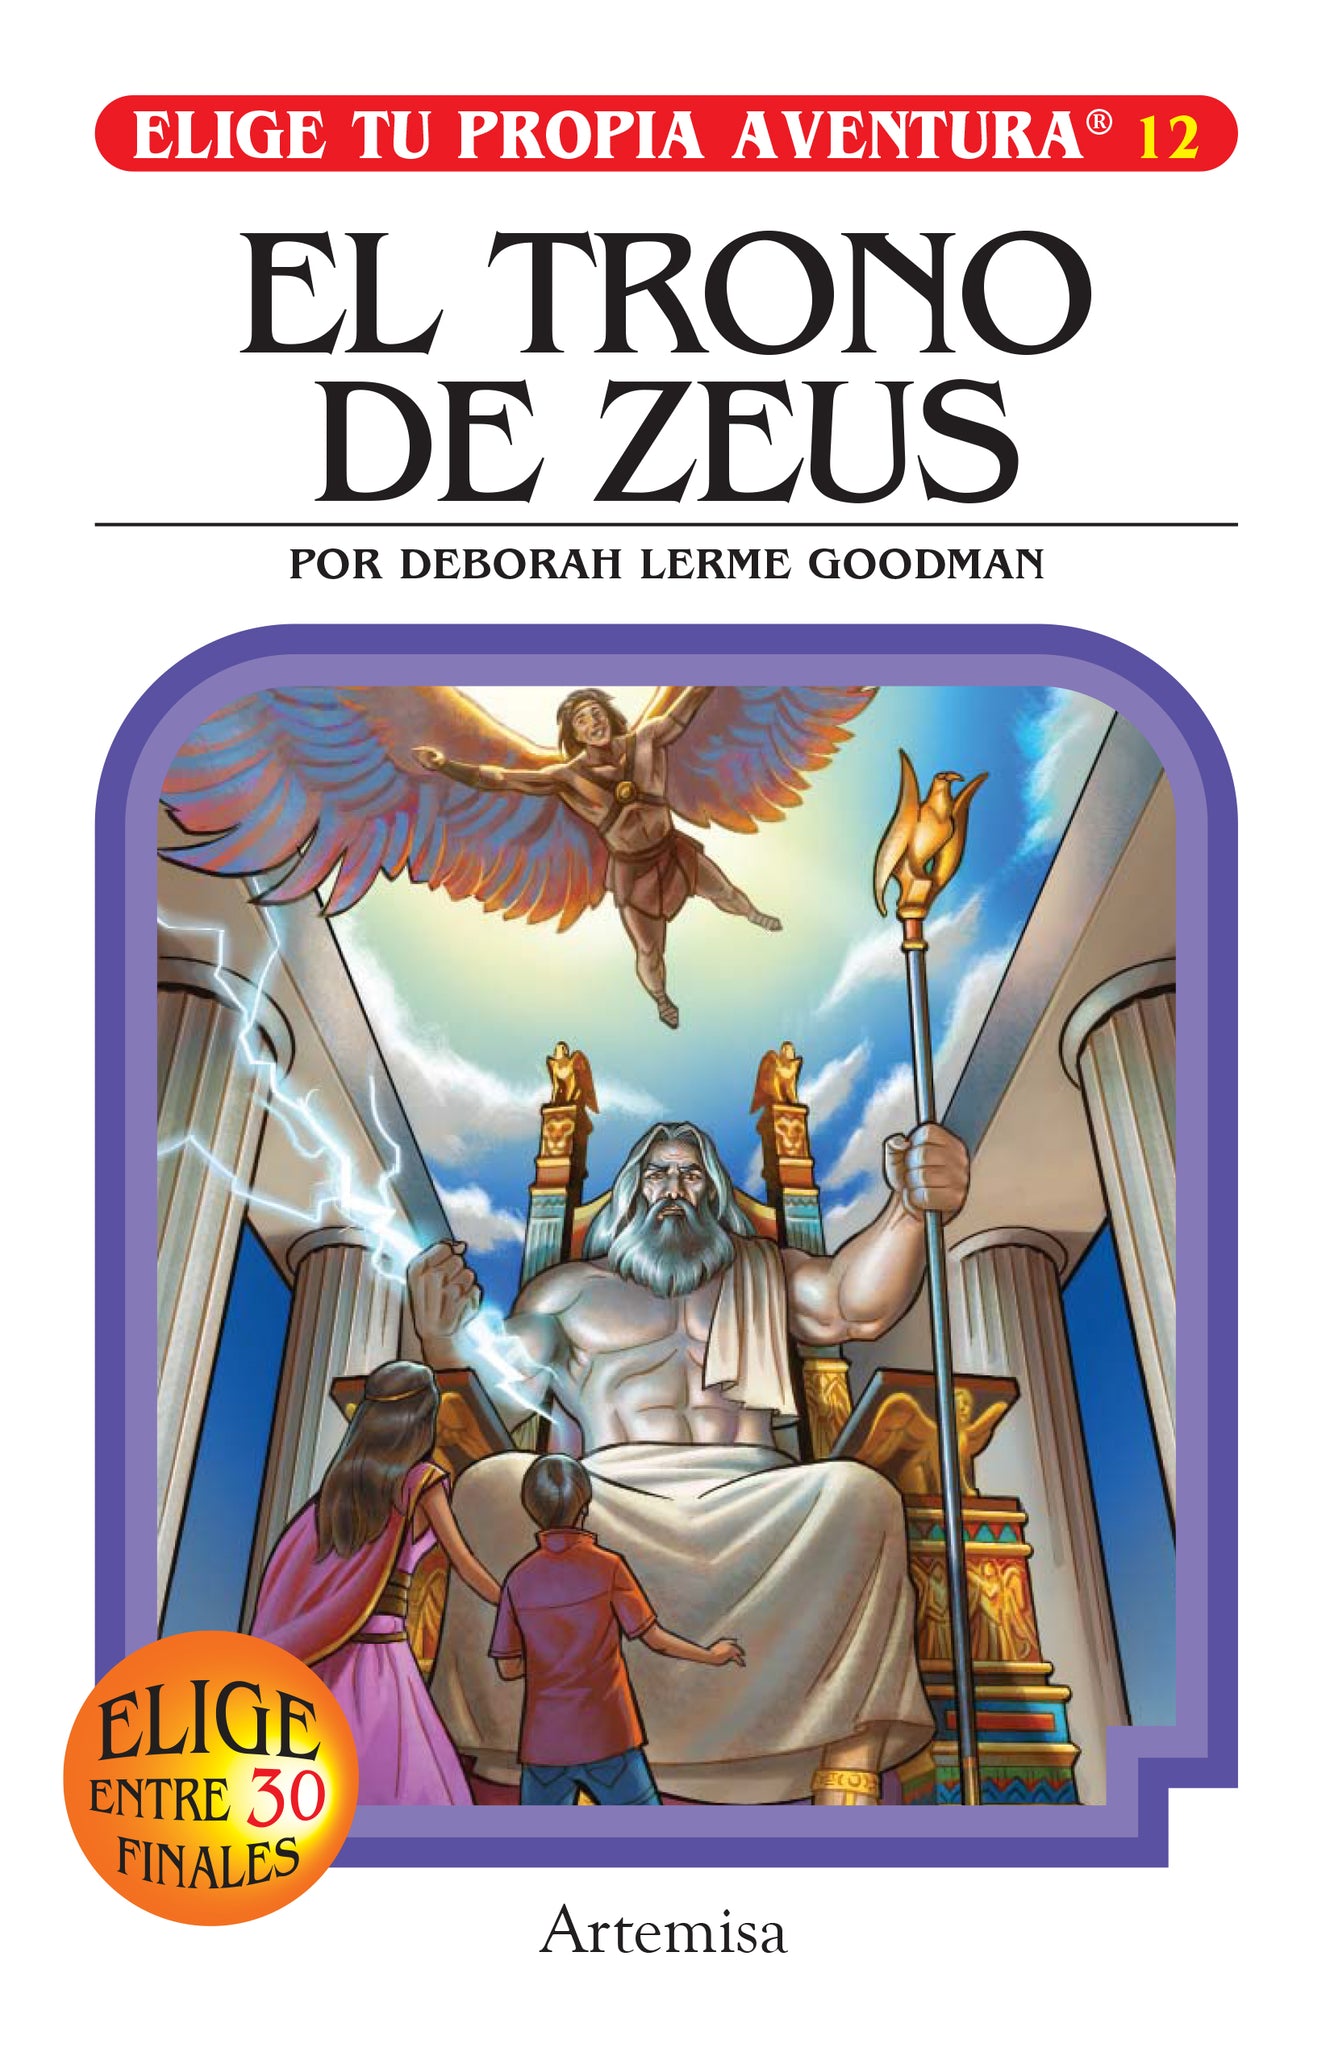 ELIGE TU PROPIA AVENTURA 12 El trono de Zeus